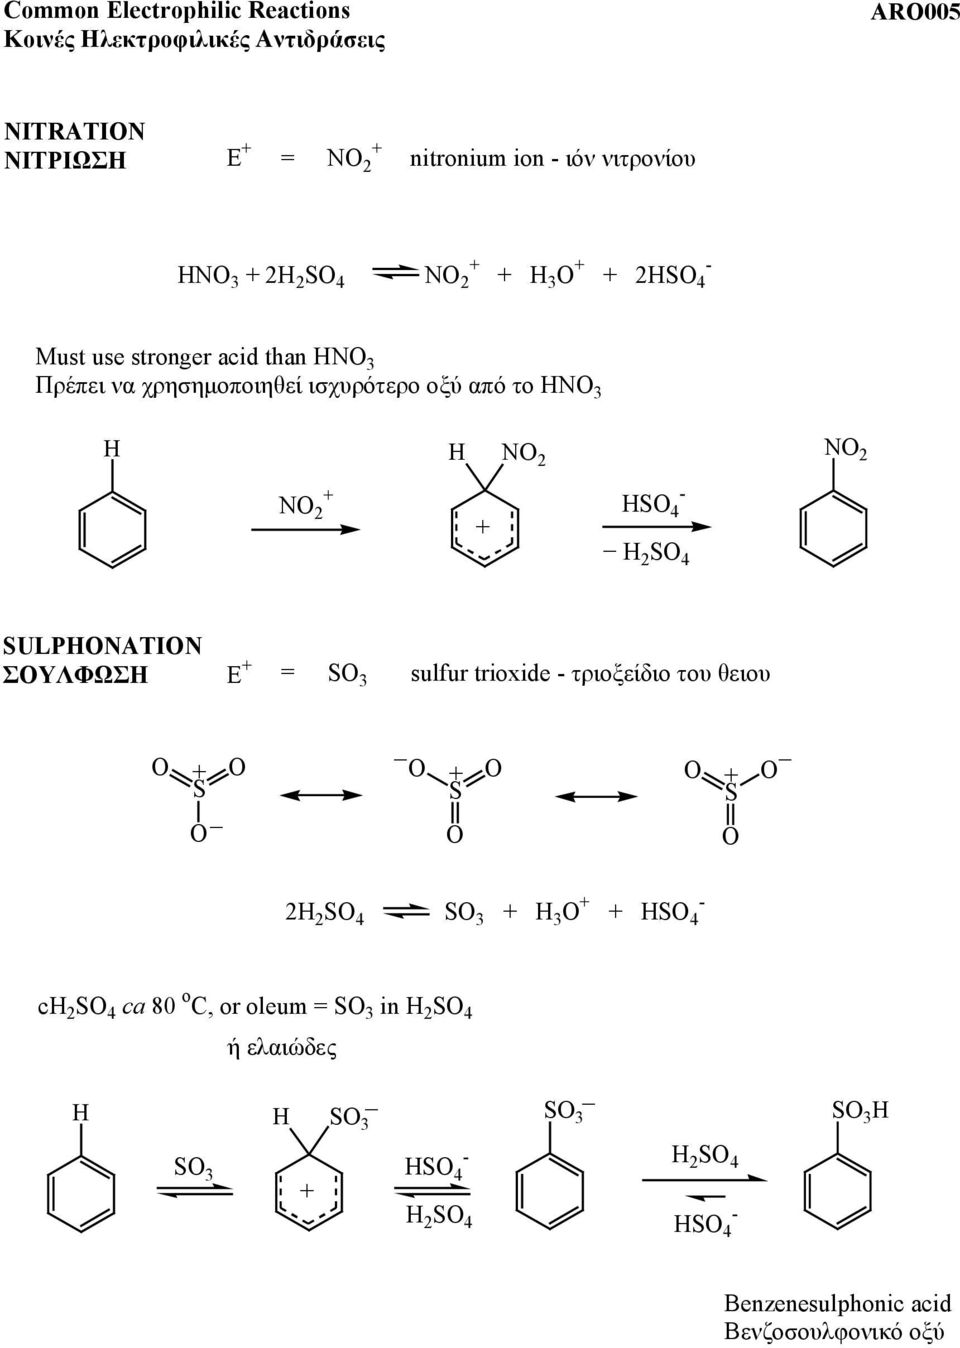 2 S 4 2 S 4 SULPATI ΣΟΥΛΦΩΣΗ E = S 3 sulfur trioxide τριοξείδιο του θειου S S S 2 2 S 4 S 3 3 S 4 c 2 S 4 ca 80